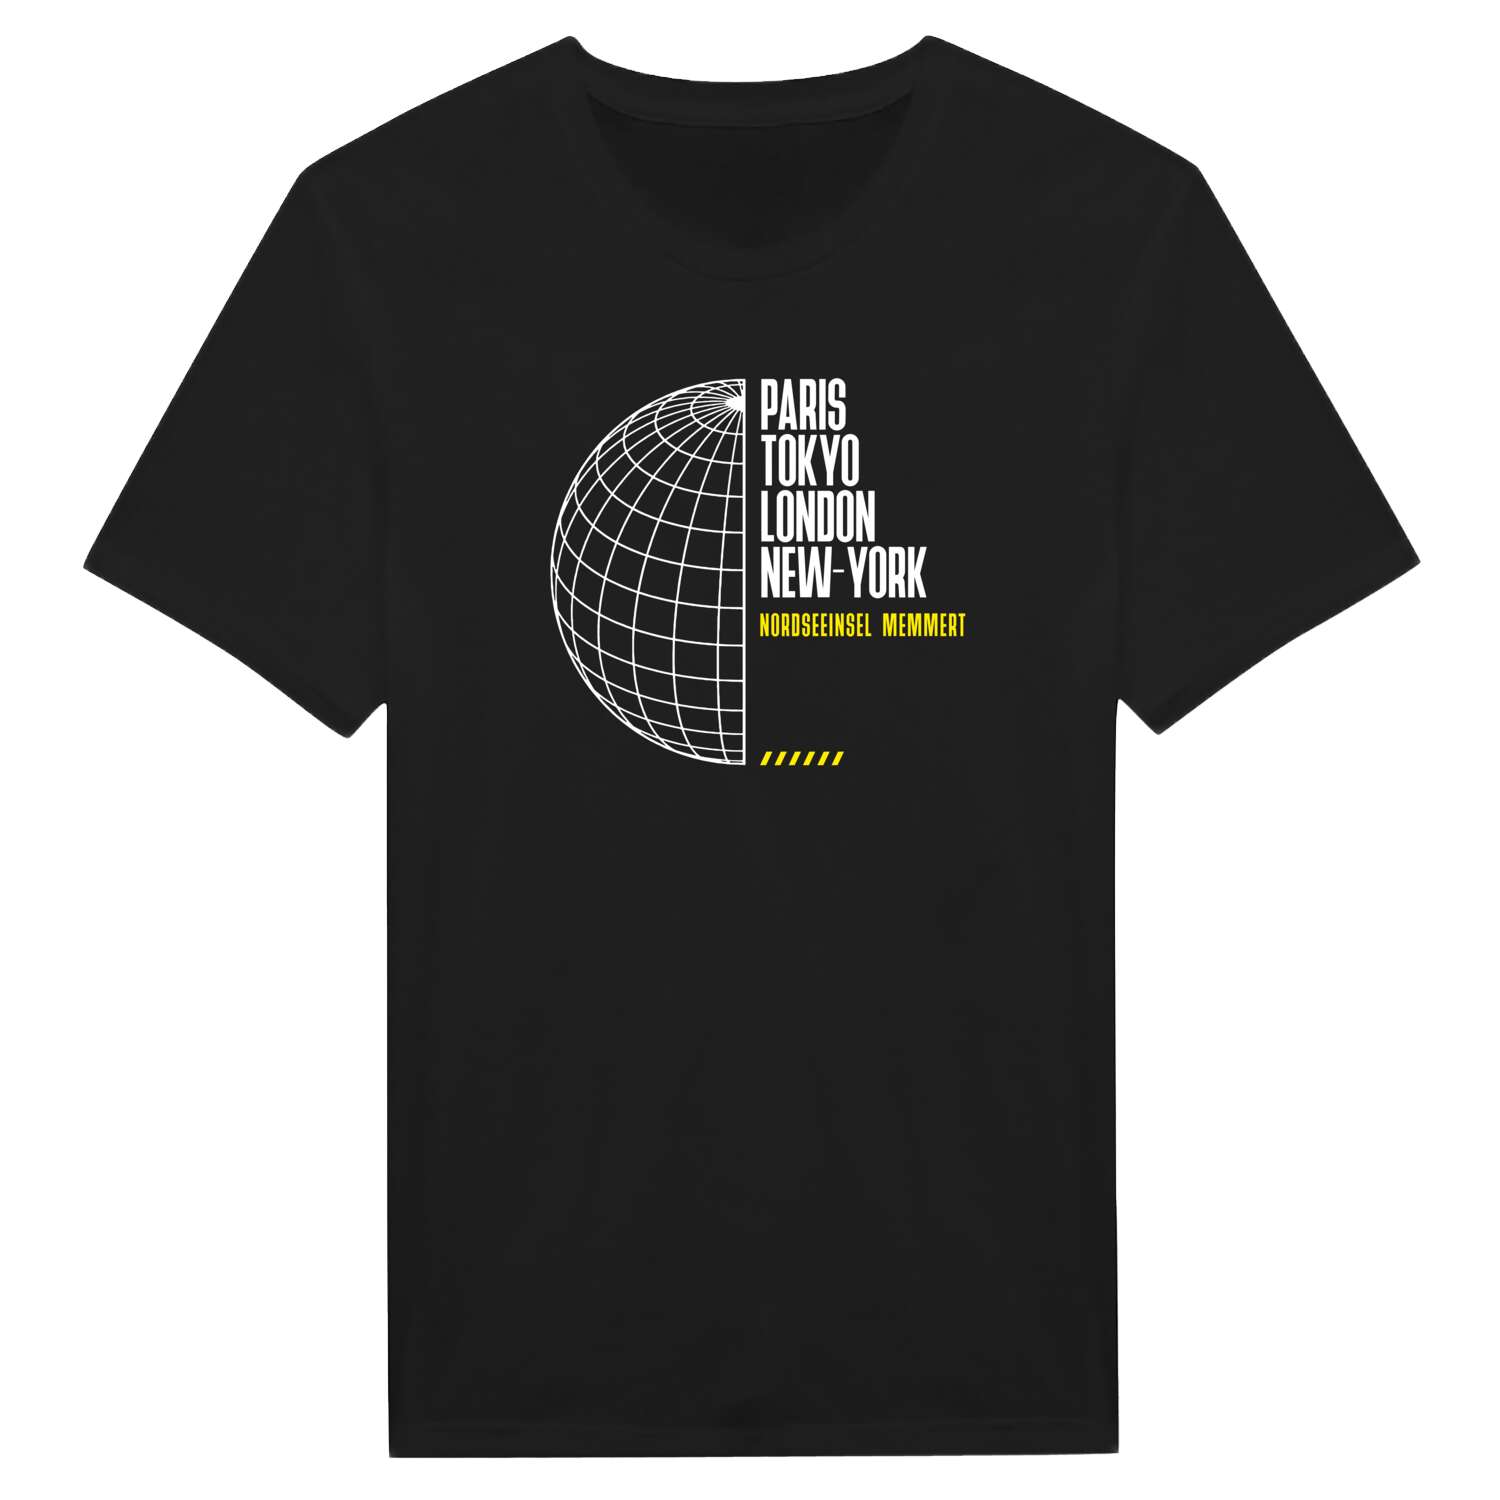 Nordseeinsel Memmert T-Shirt »Paris Tokyo London«